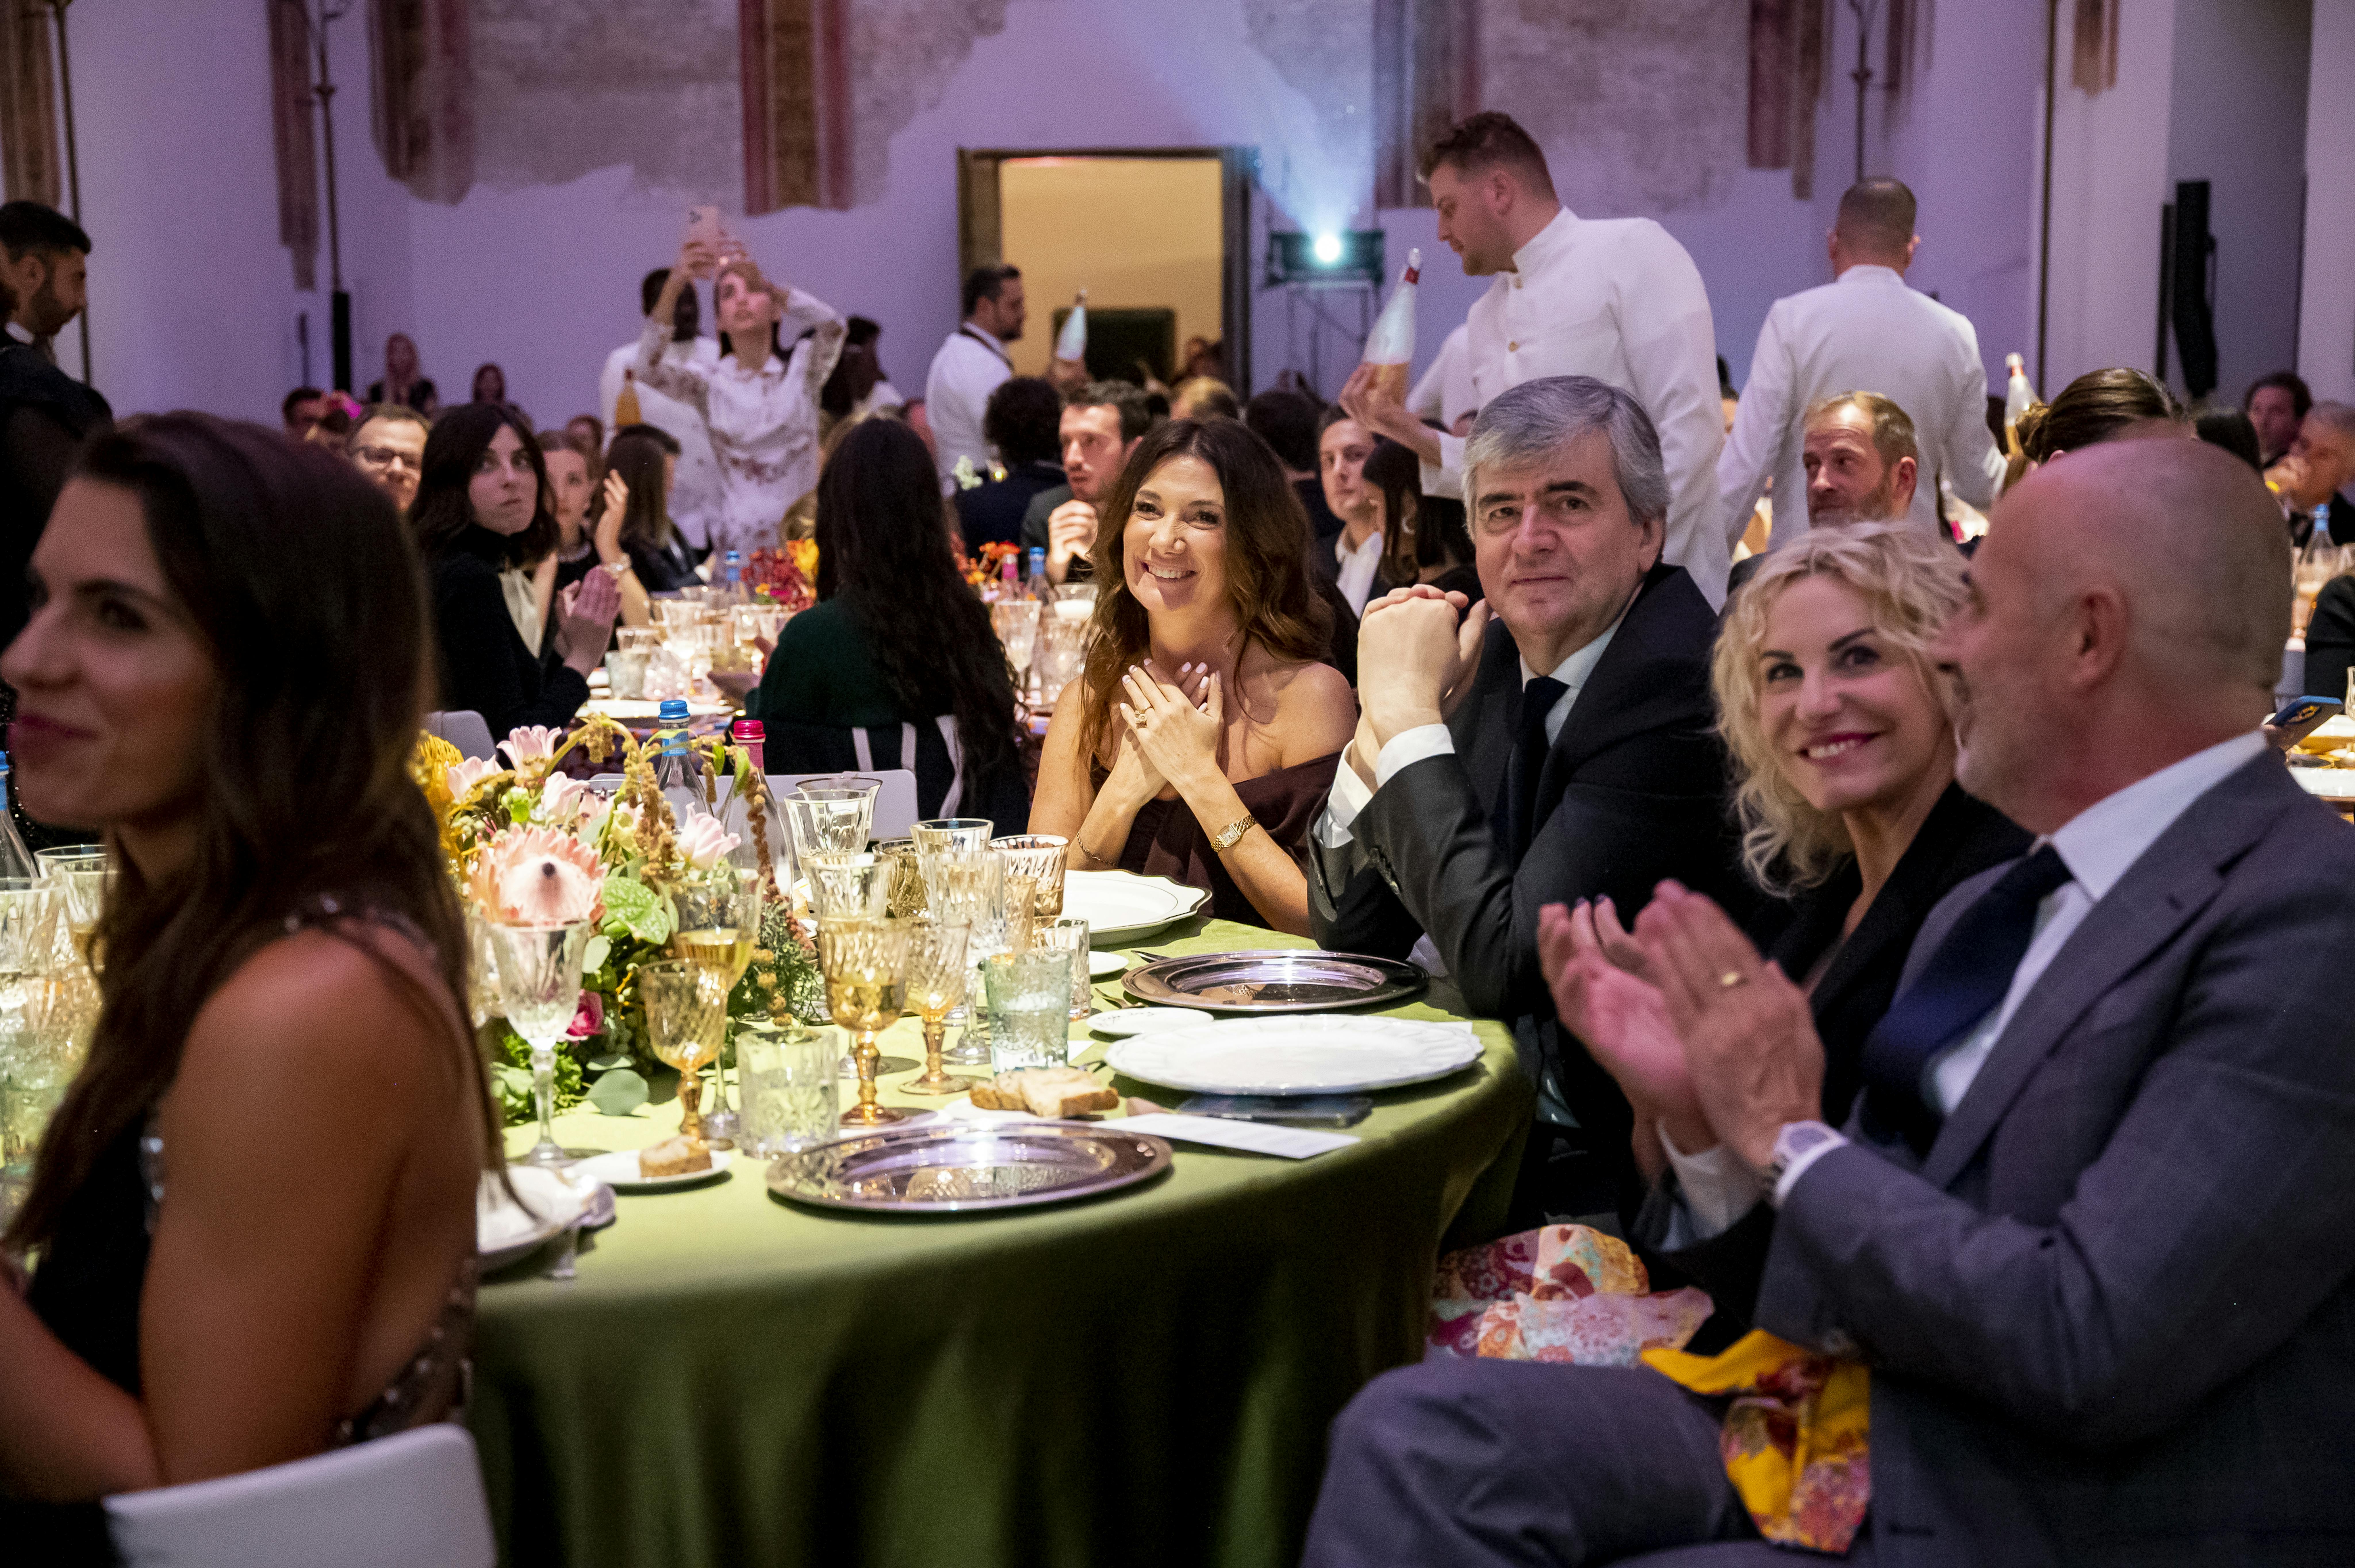 Tavola Rasa, l'evento organizzato da La Cucina Italiana e UNICEF. sulla destra Antonella Clerici, Gianmarco Mazzi e Maddalena Fossati